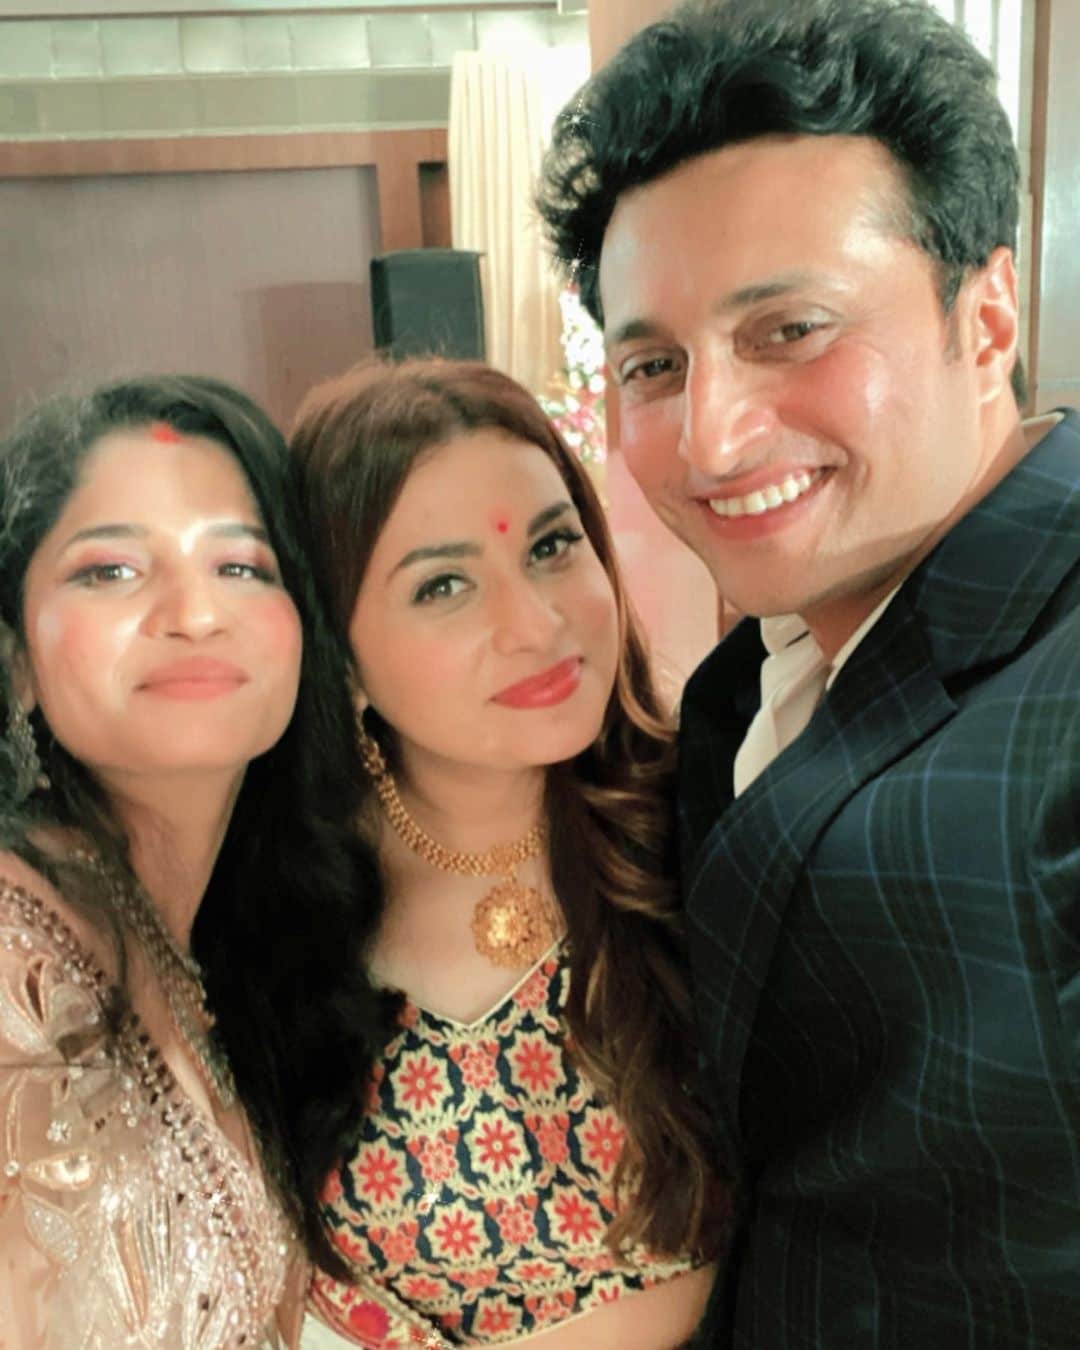  यश पंडित और महिला मिश्रा की शादी में निजी तरीके से हुई. इसमें सिर्फ परिवार के लोग और उनके कुछ कीरीबी दोस्त ही शामिल हुए. (फोटो साभारः Instagram @yashpandit_officialfanpage/shraddhapandit)